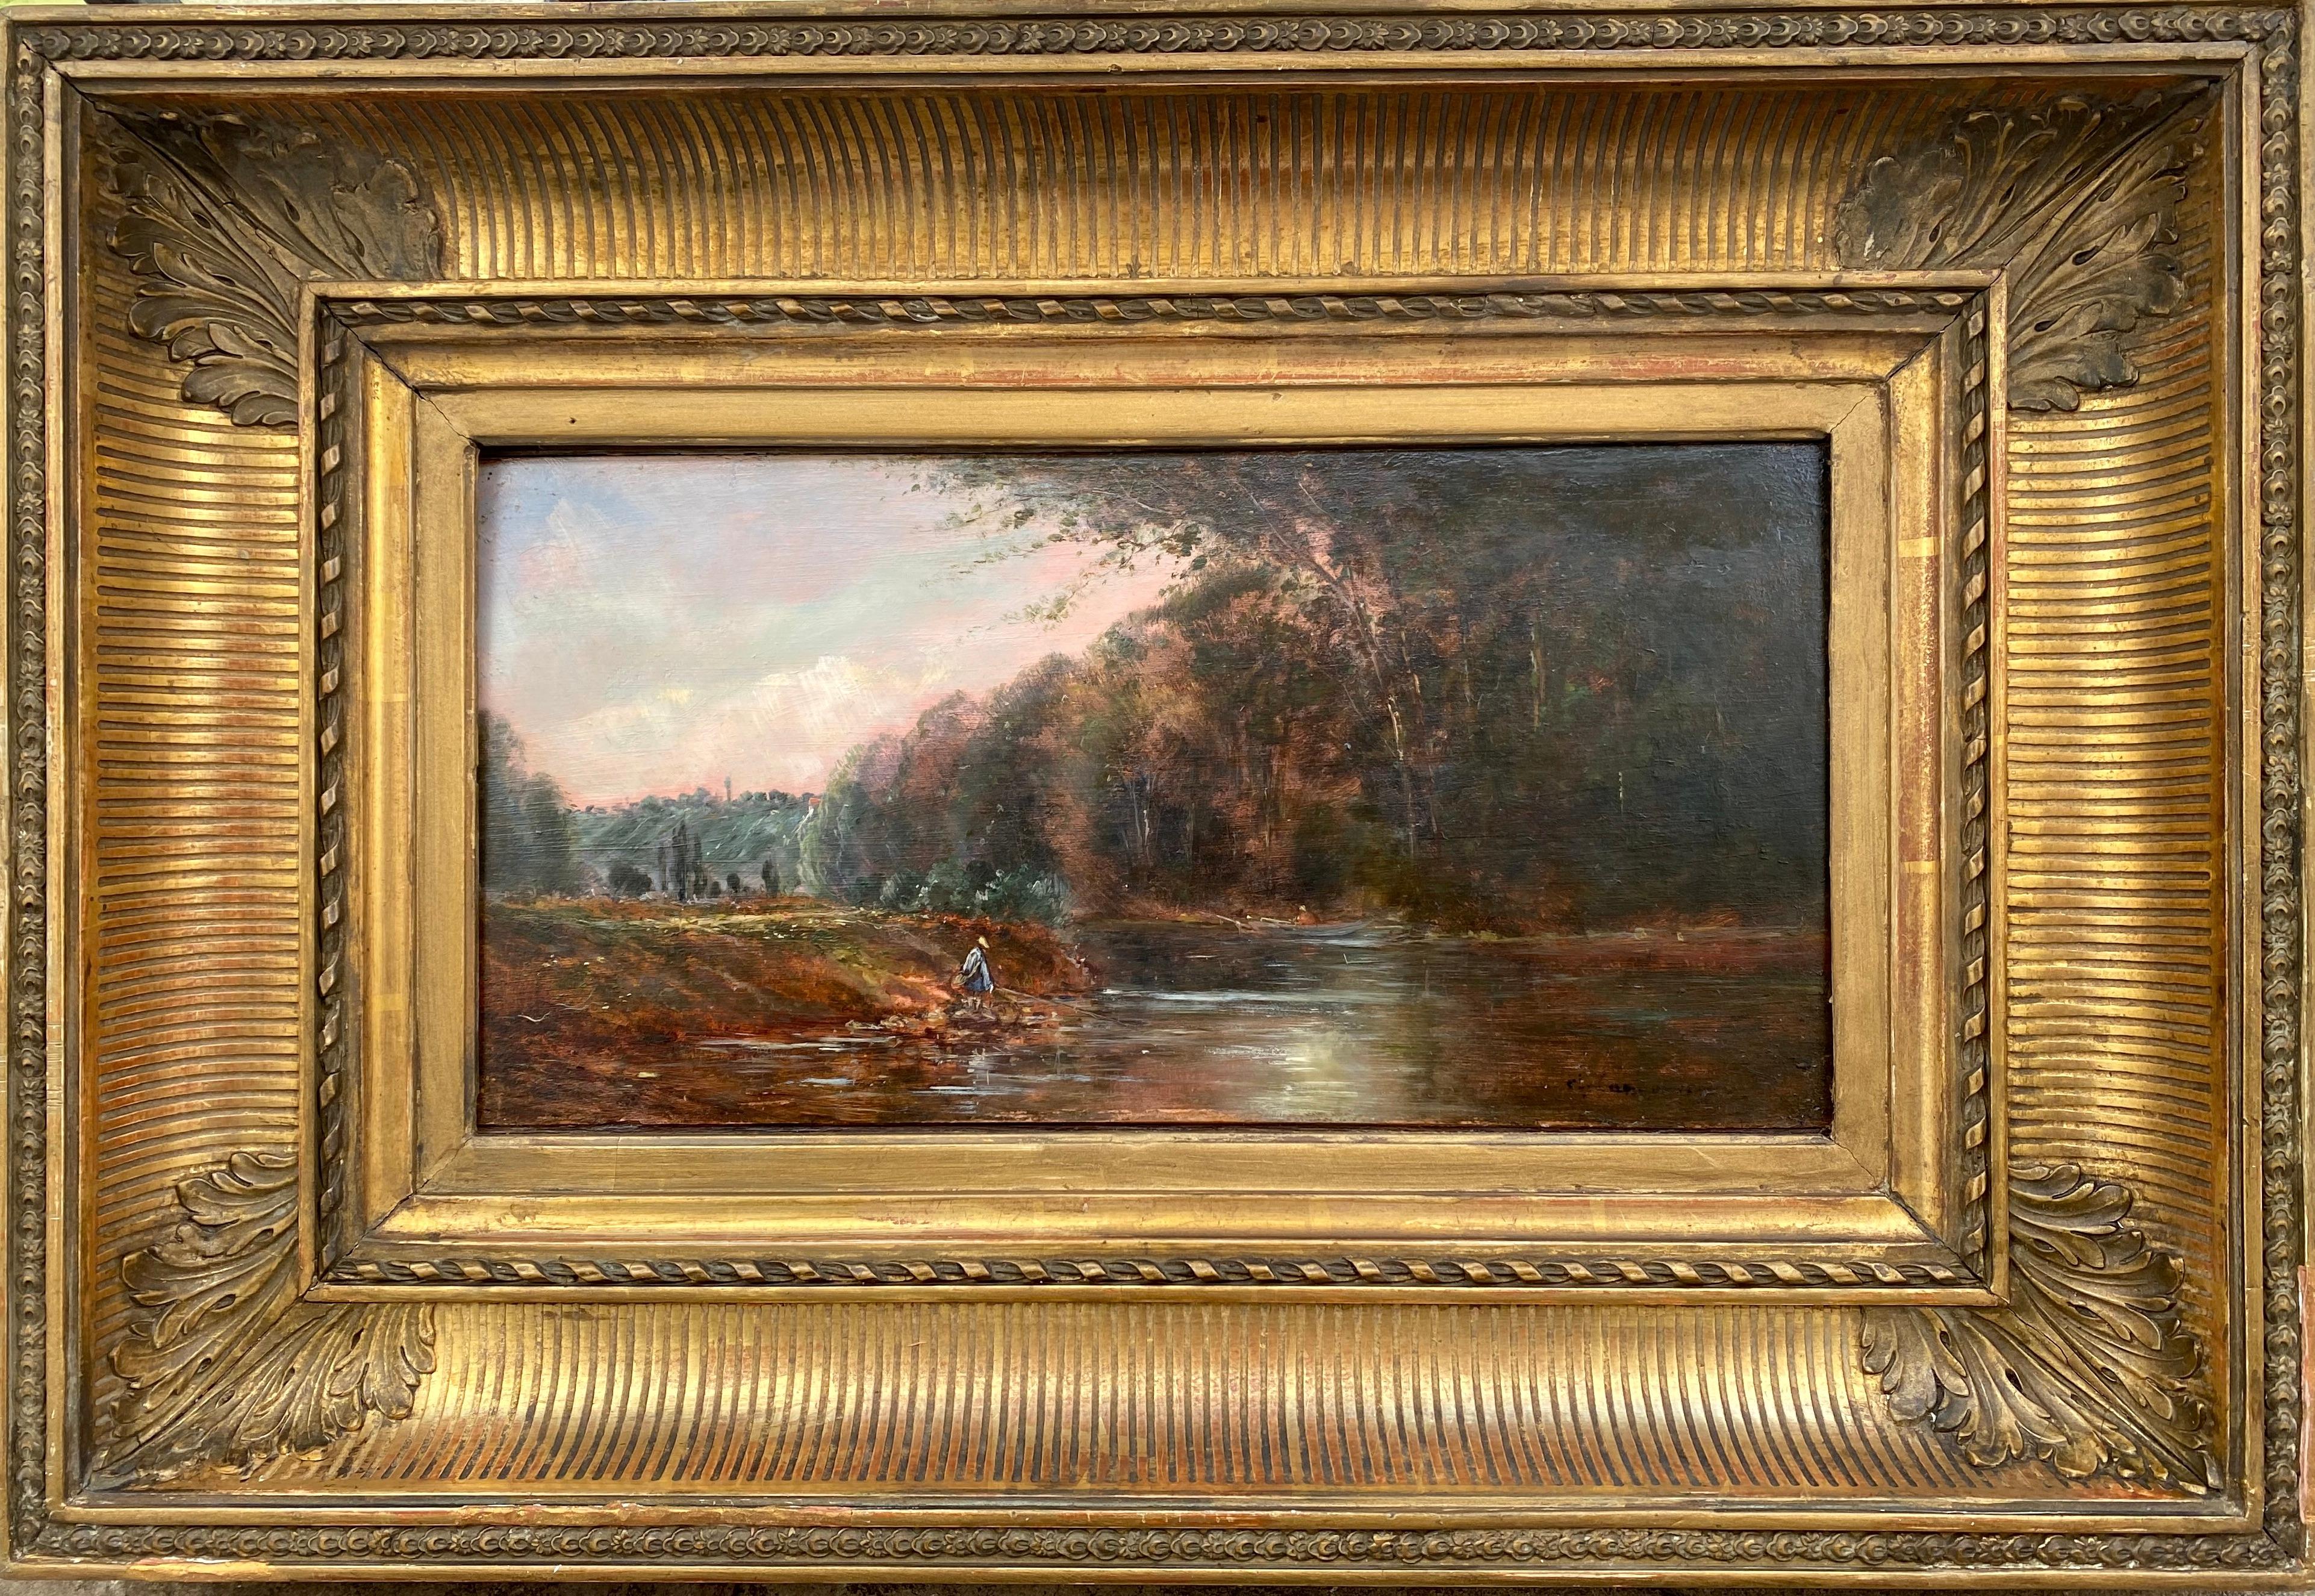 Licht auf dem Wasser, leuchtende Flusslandschaft mit zwei einsamen Figuren, Gemälde